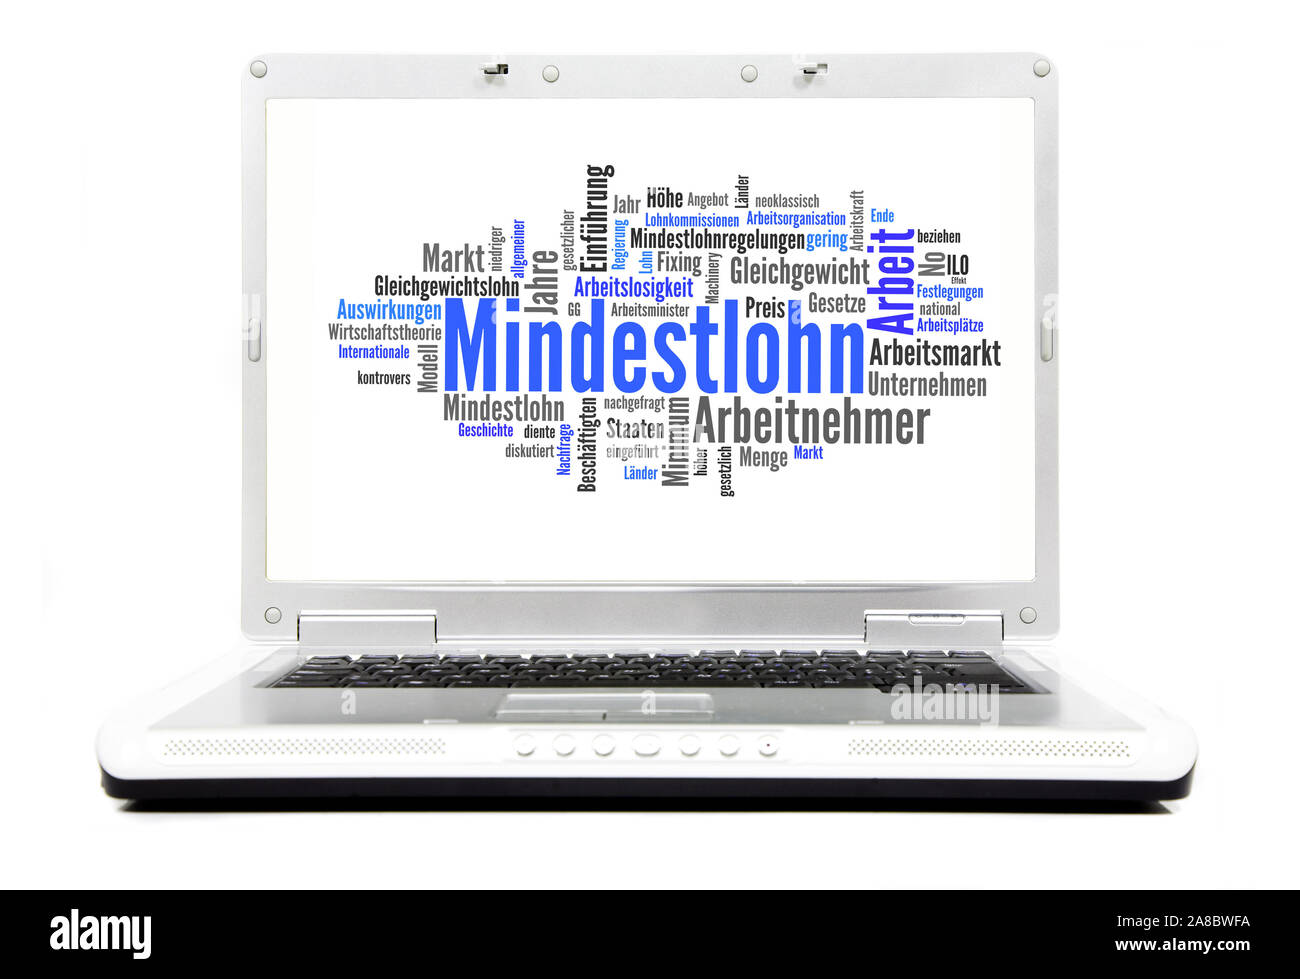 Laptop, Hintergrund Mindestlohnforderungen, Stock Photo